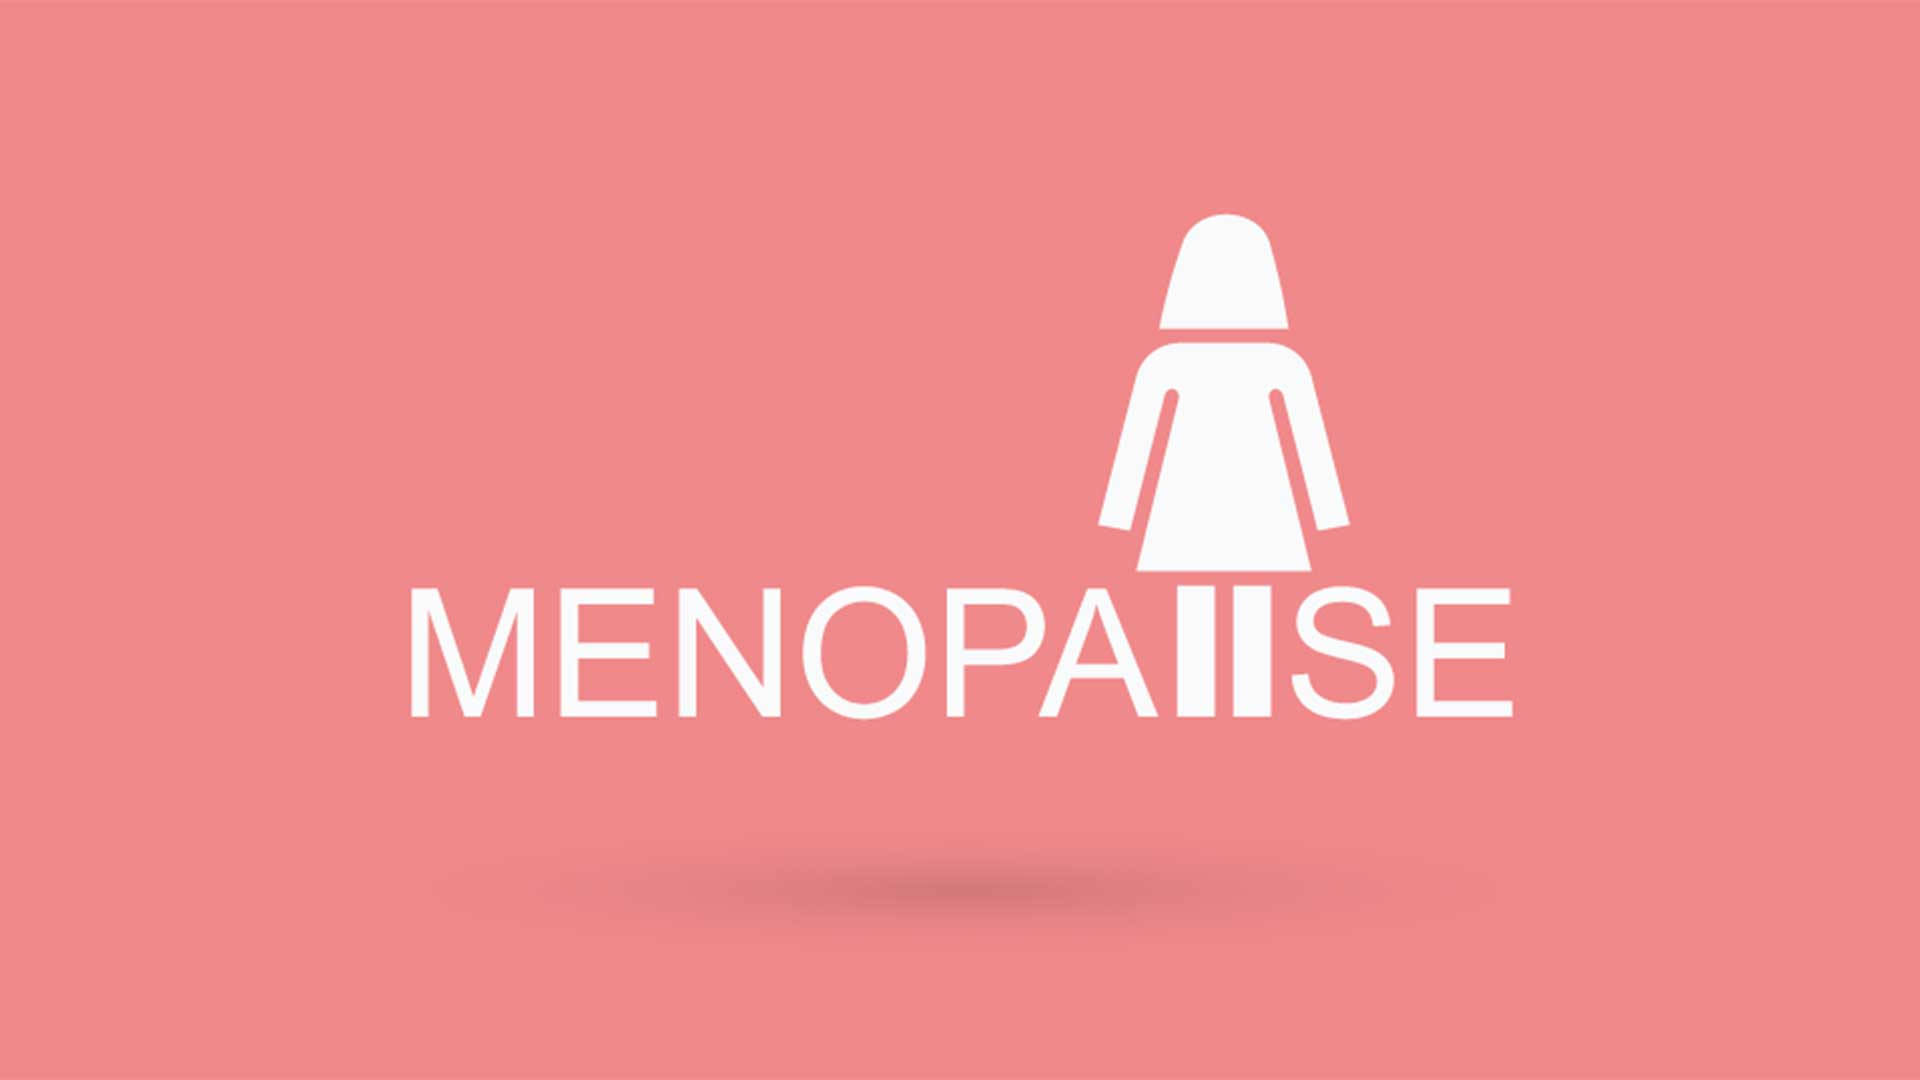 Menopausiaarte Vectorial Fondo de pantalla